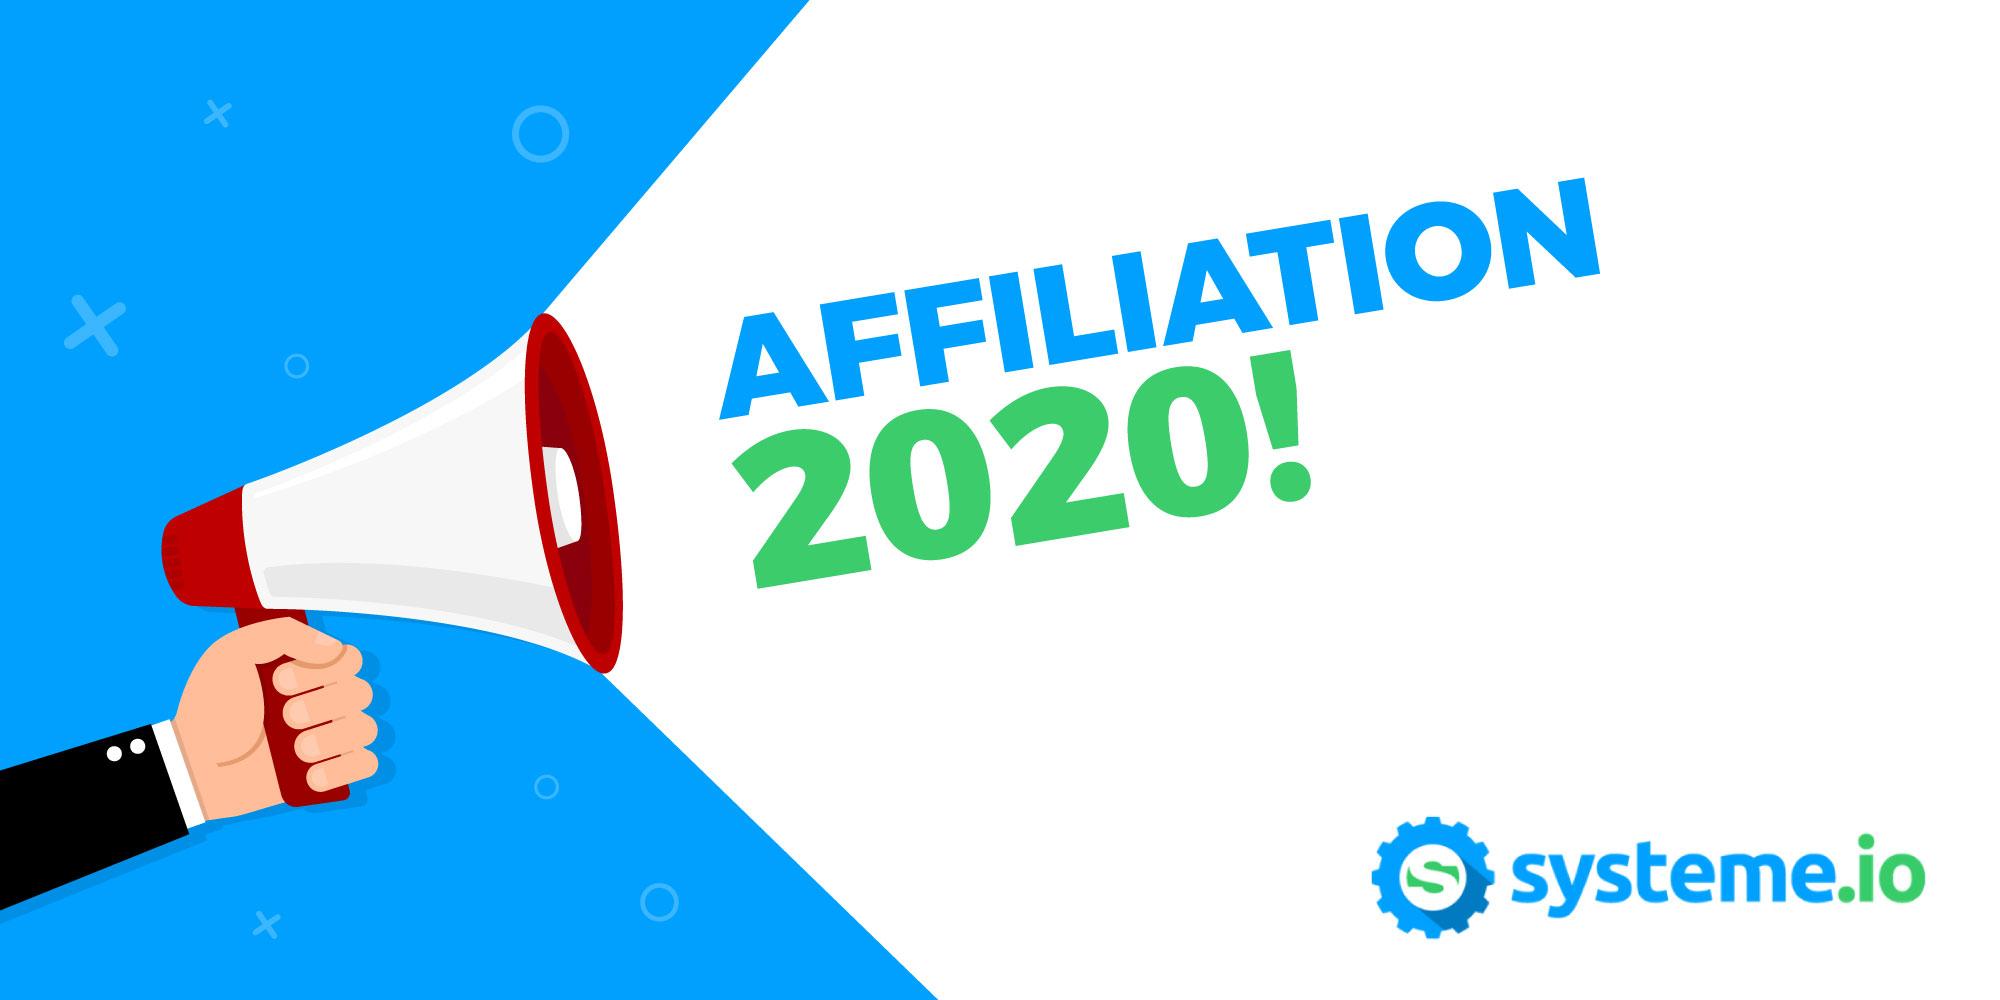 programme affiliation francais 2020 systeme.io